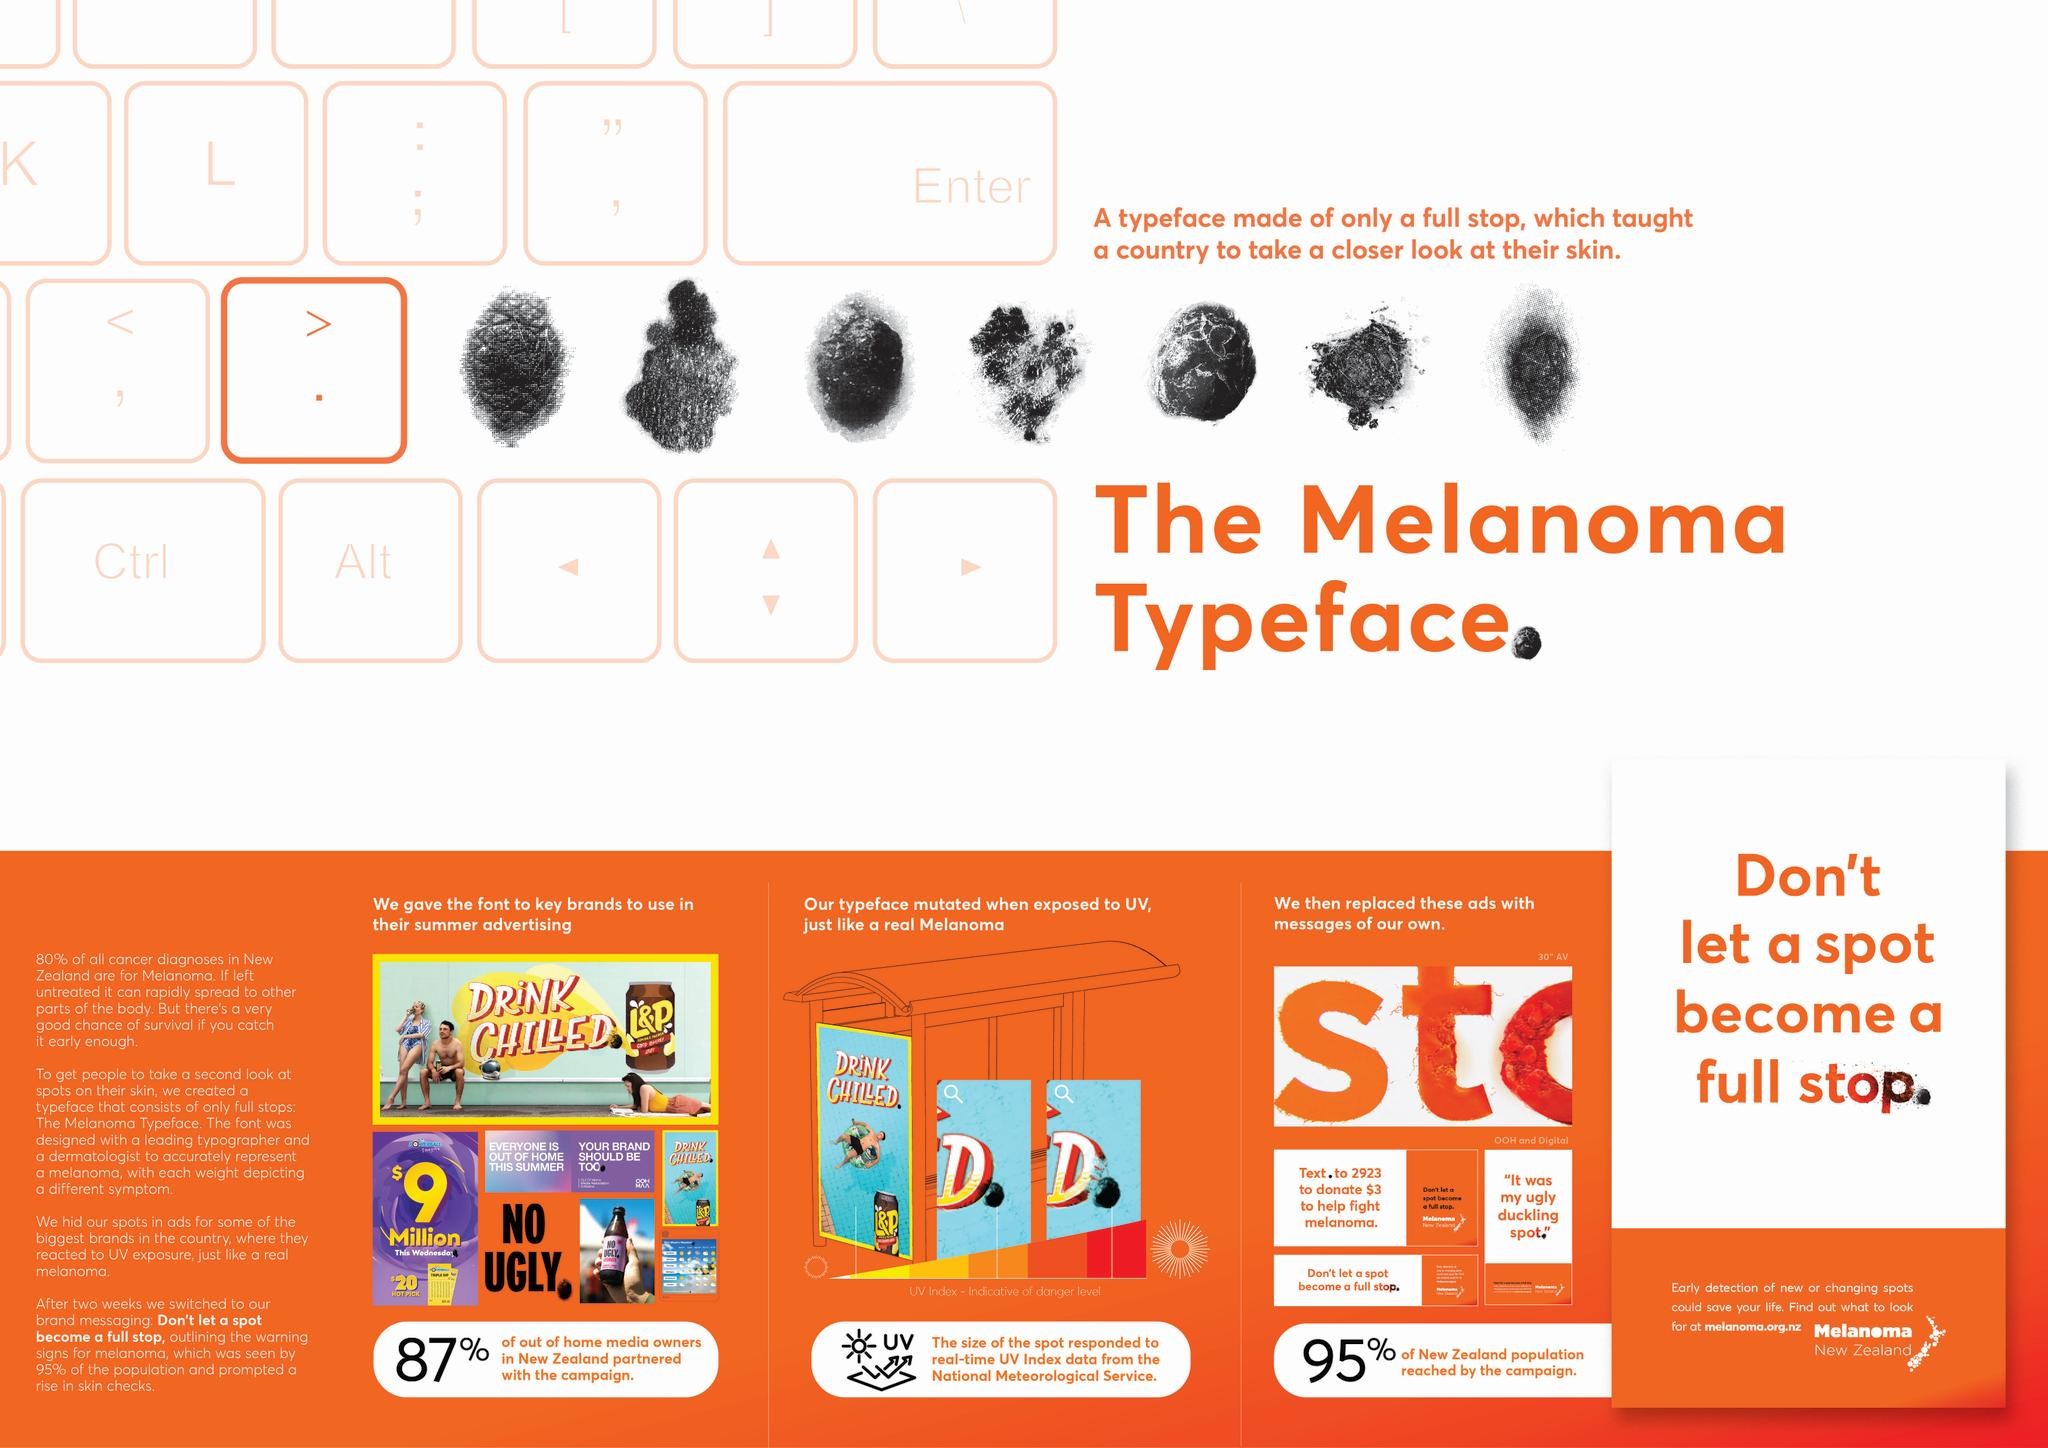 THE MELANOMA TYPEFACE